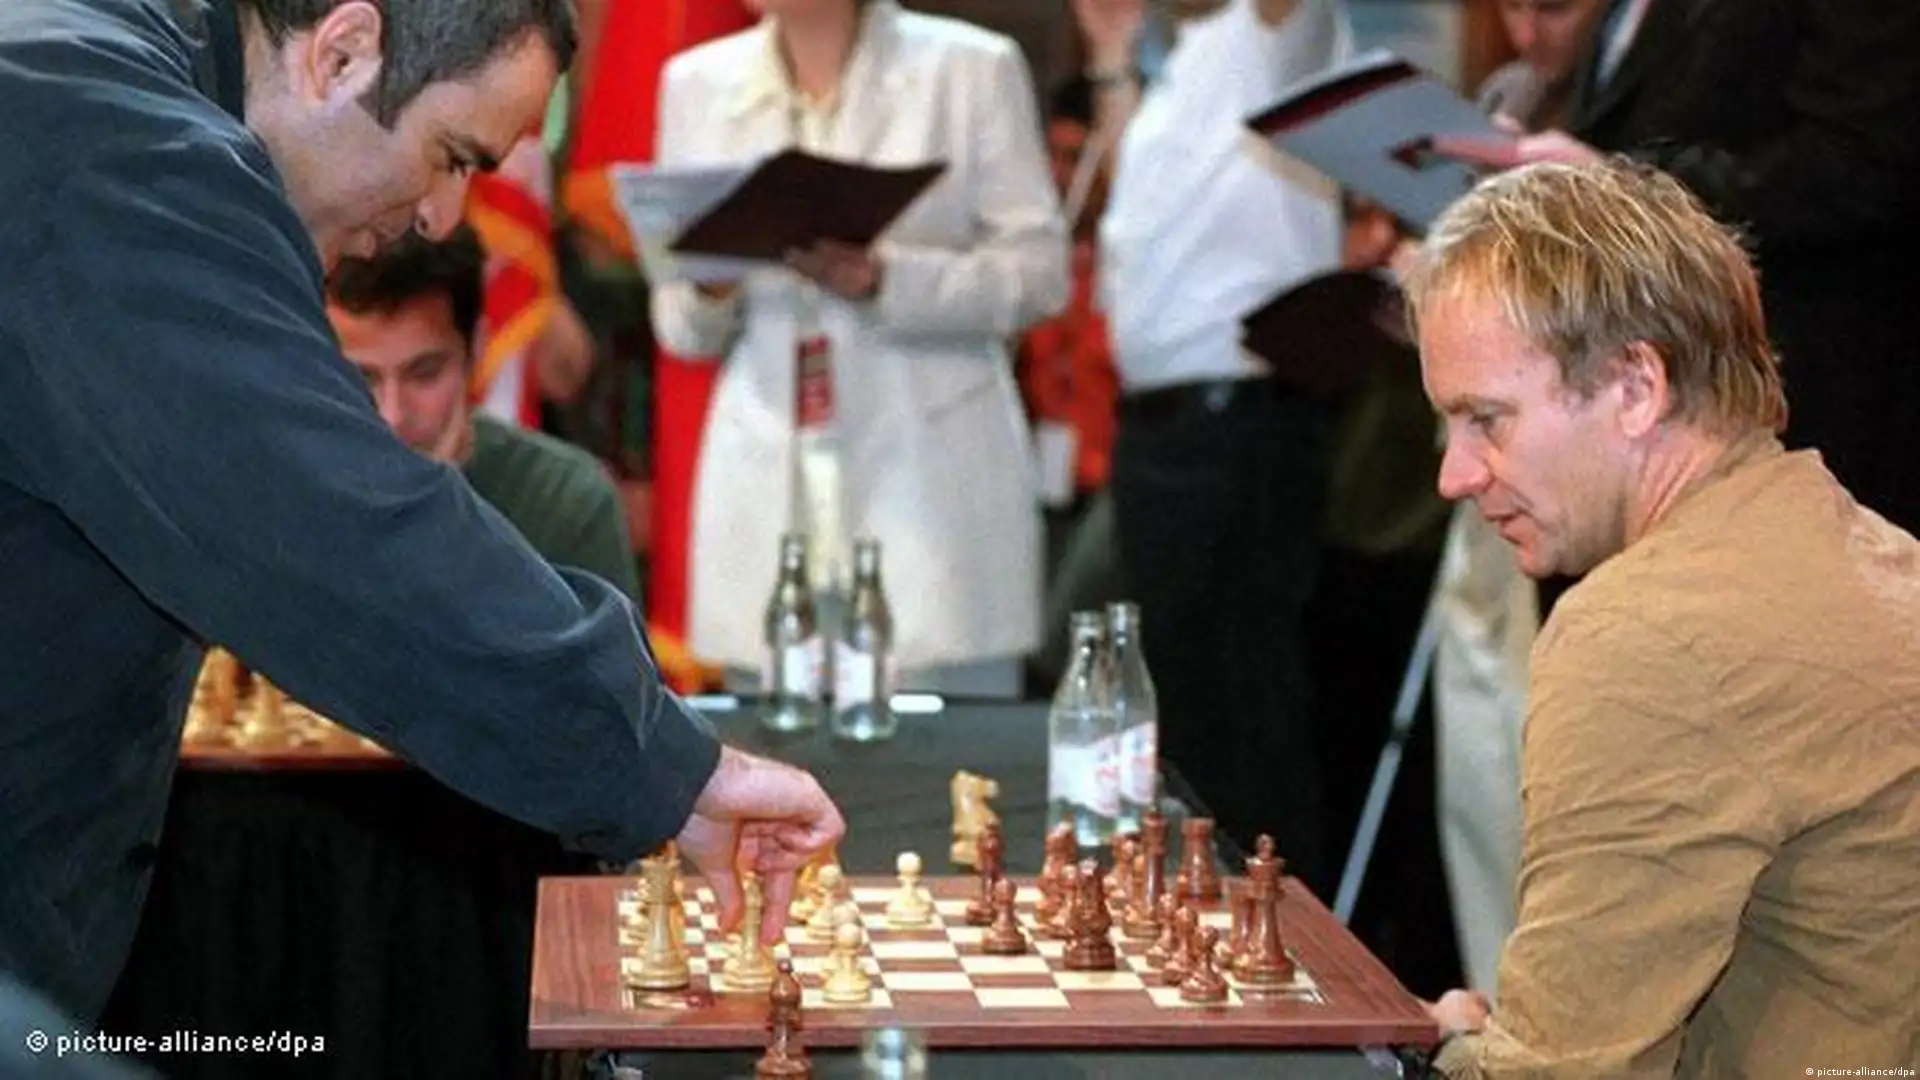 Schach, Spiel der Könige und Künstler – DW